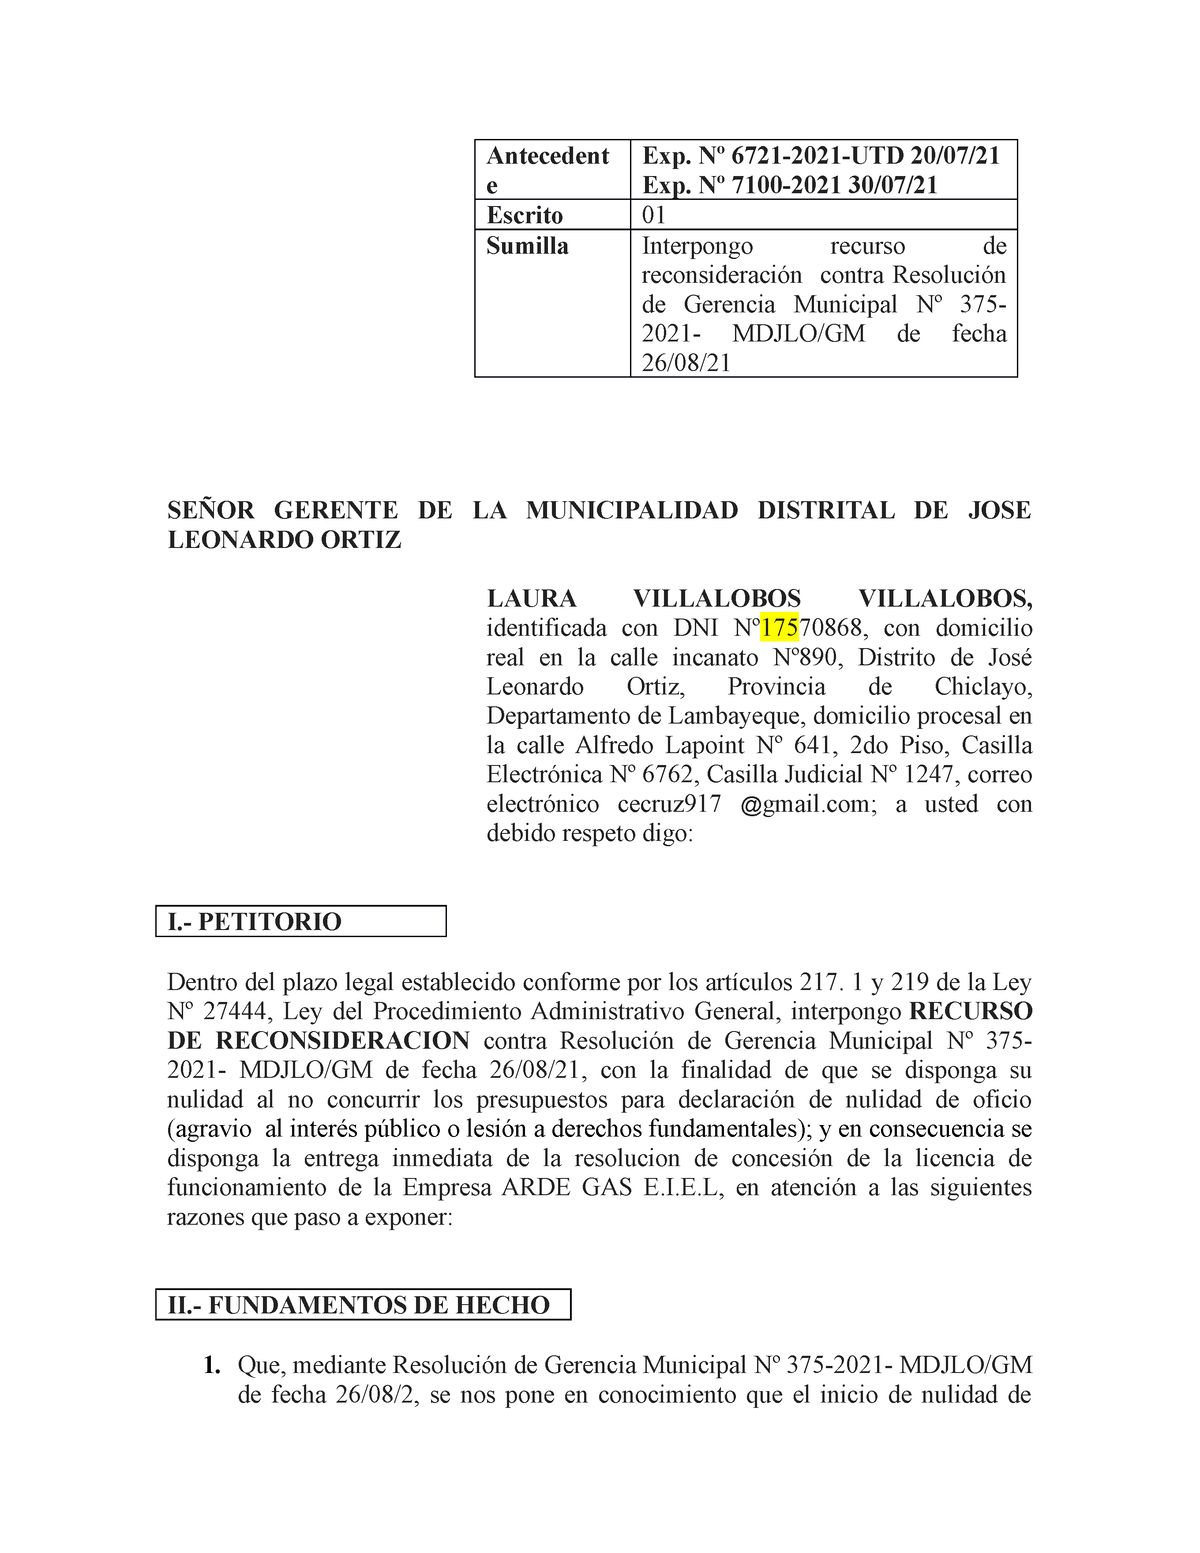 MODELO DE RECURSO DE RECONSIDERACION - Derecho Administrativo II - UNPRG -  Studocu